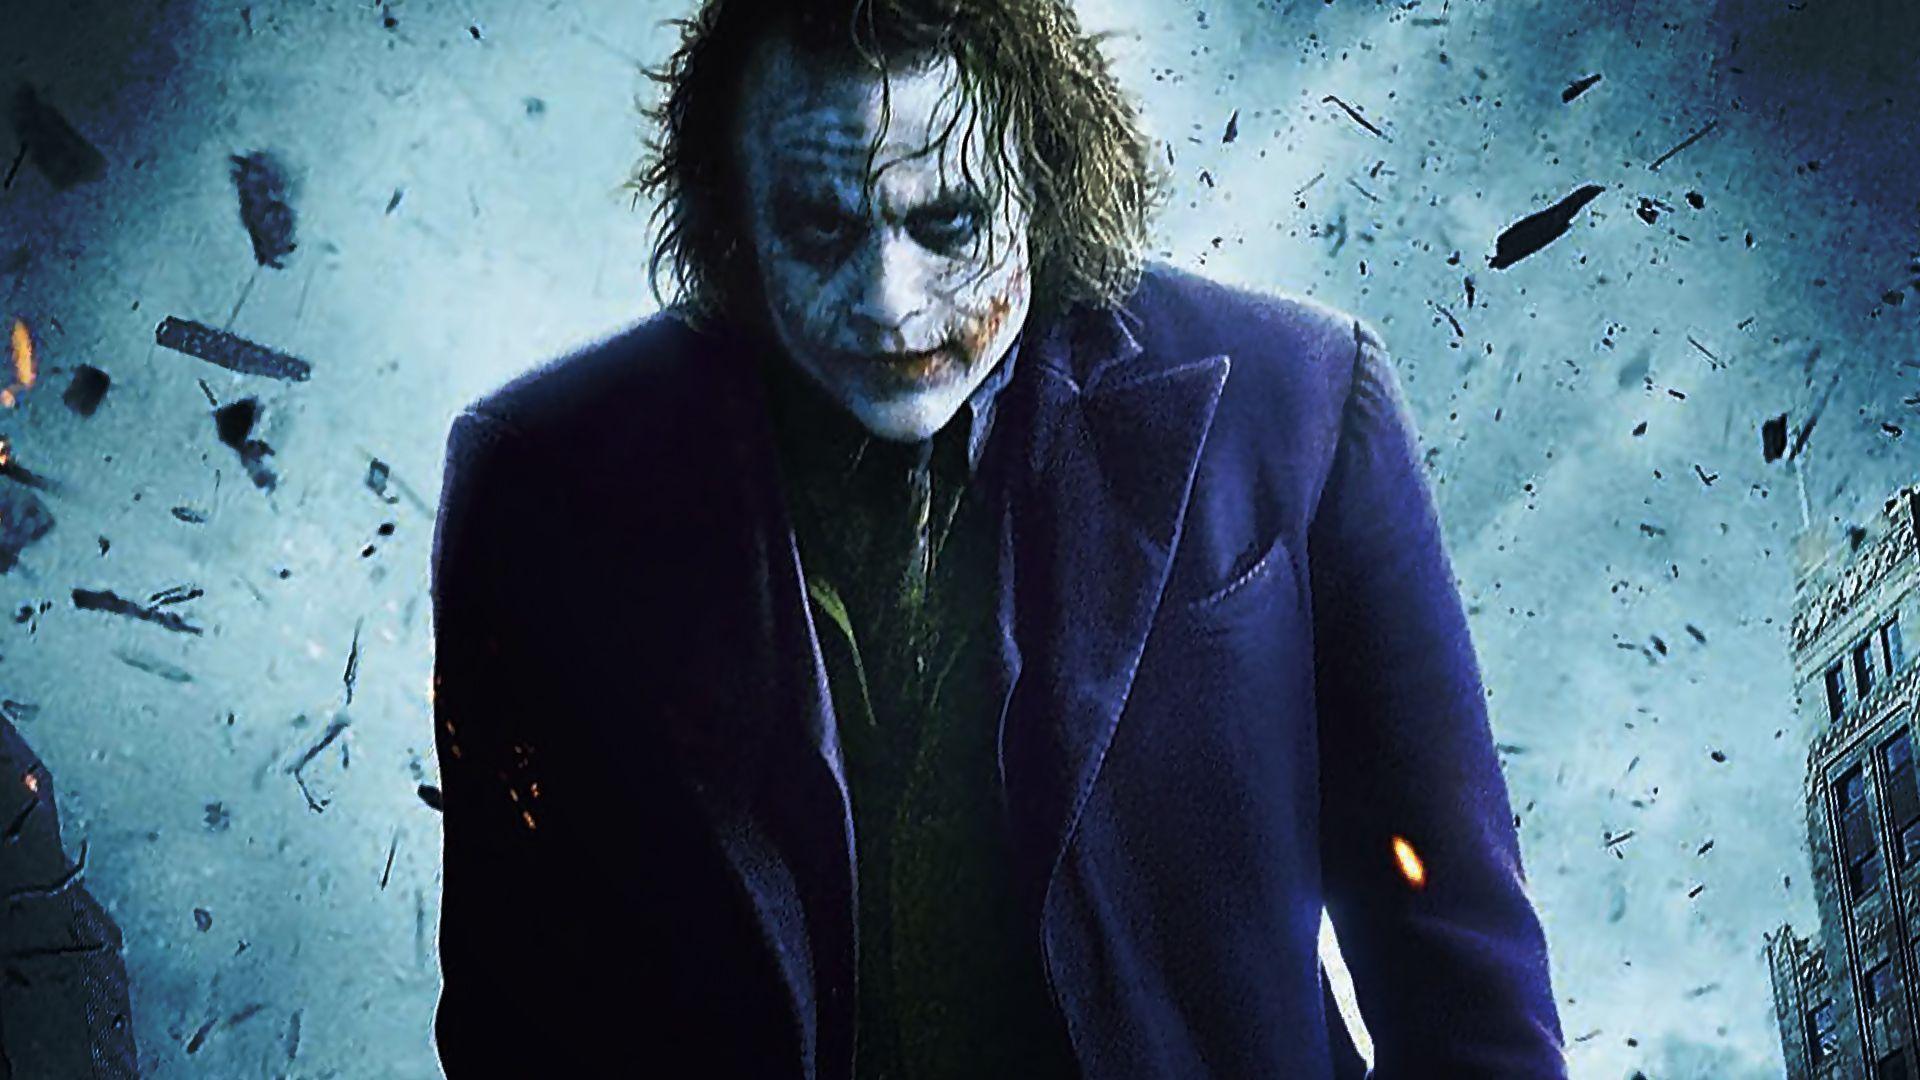 The Joker Dark Knight wallpaper